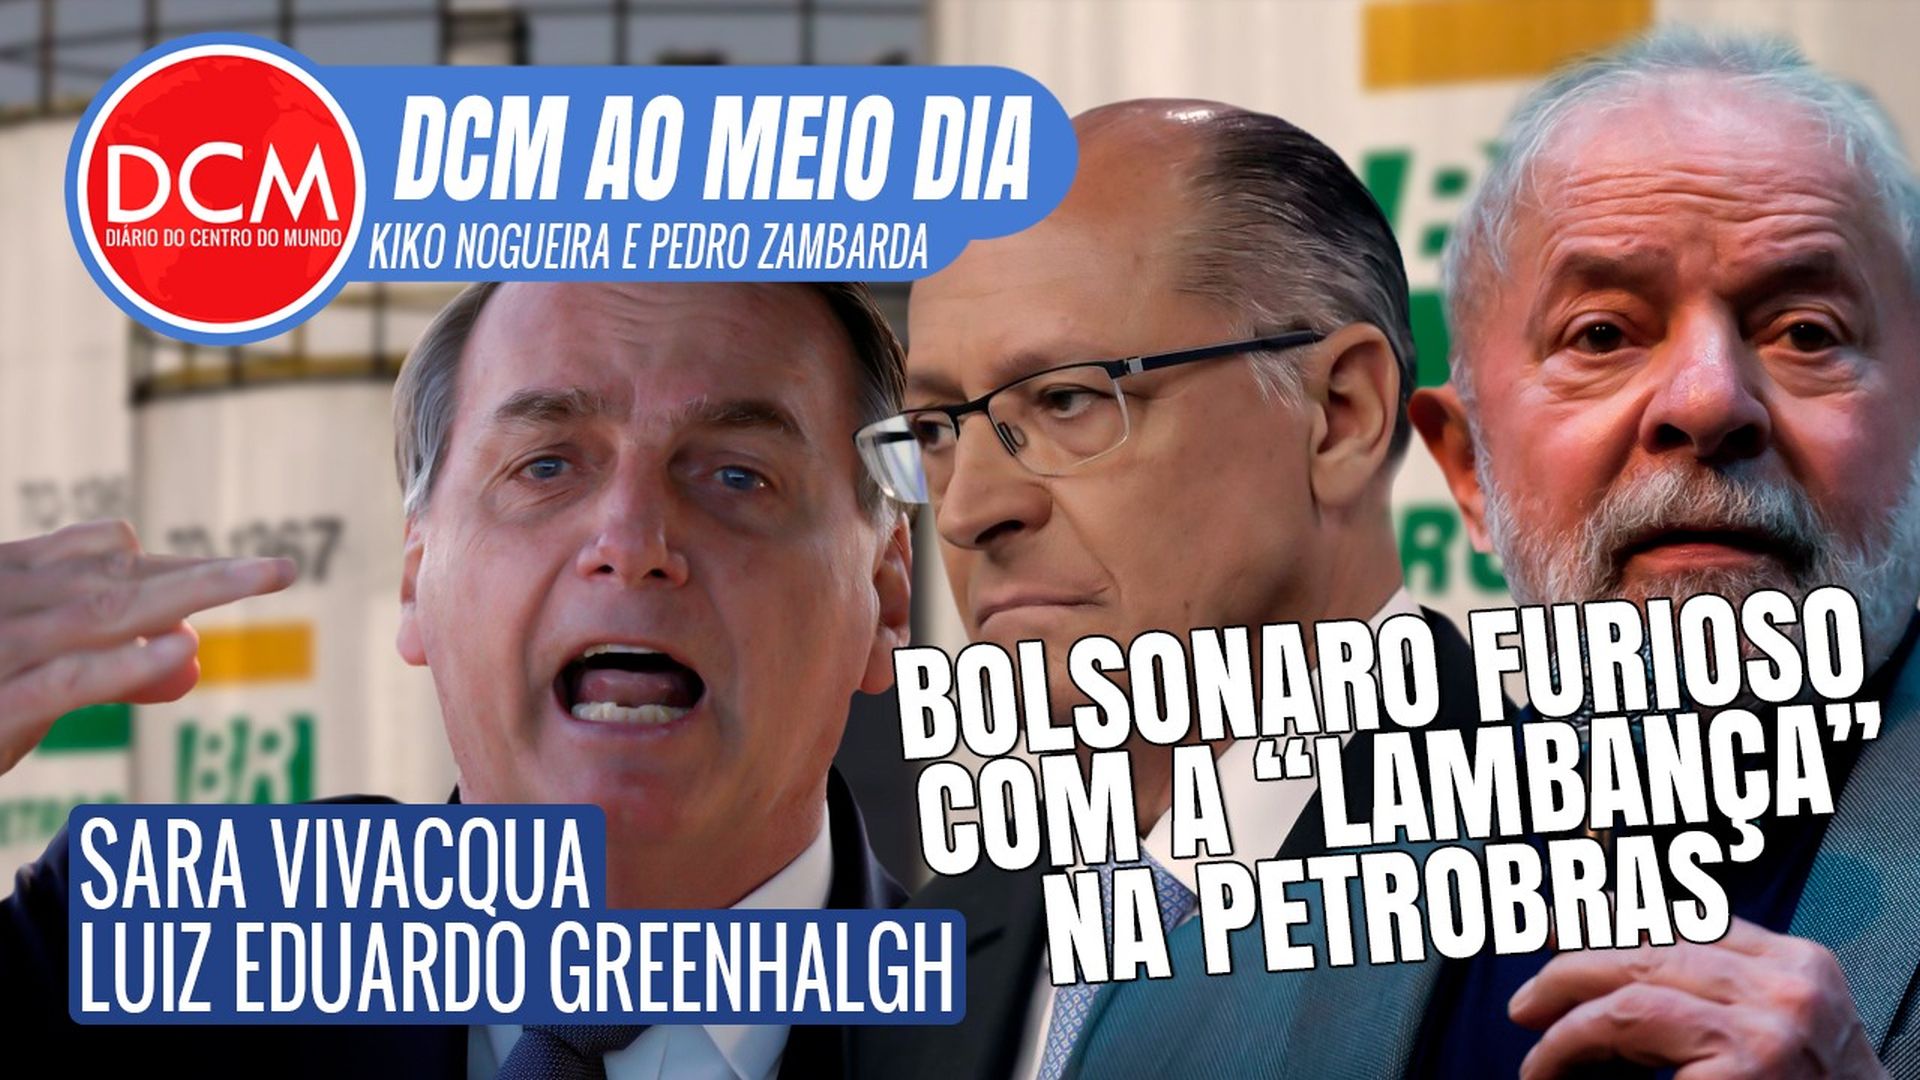 DCM Ao Meio-Dia: “Eu mudei, o Alckmin mudou”, diz Lula; a malandragem do Globo